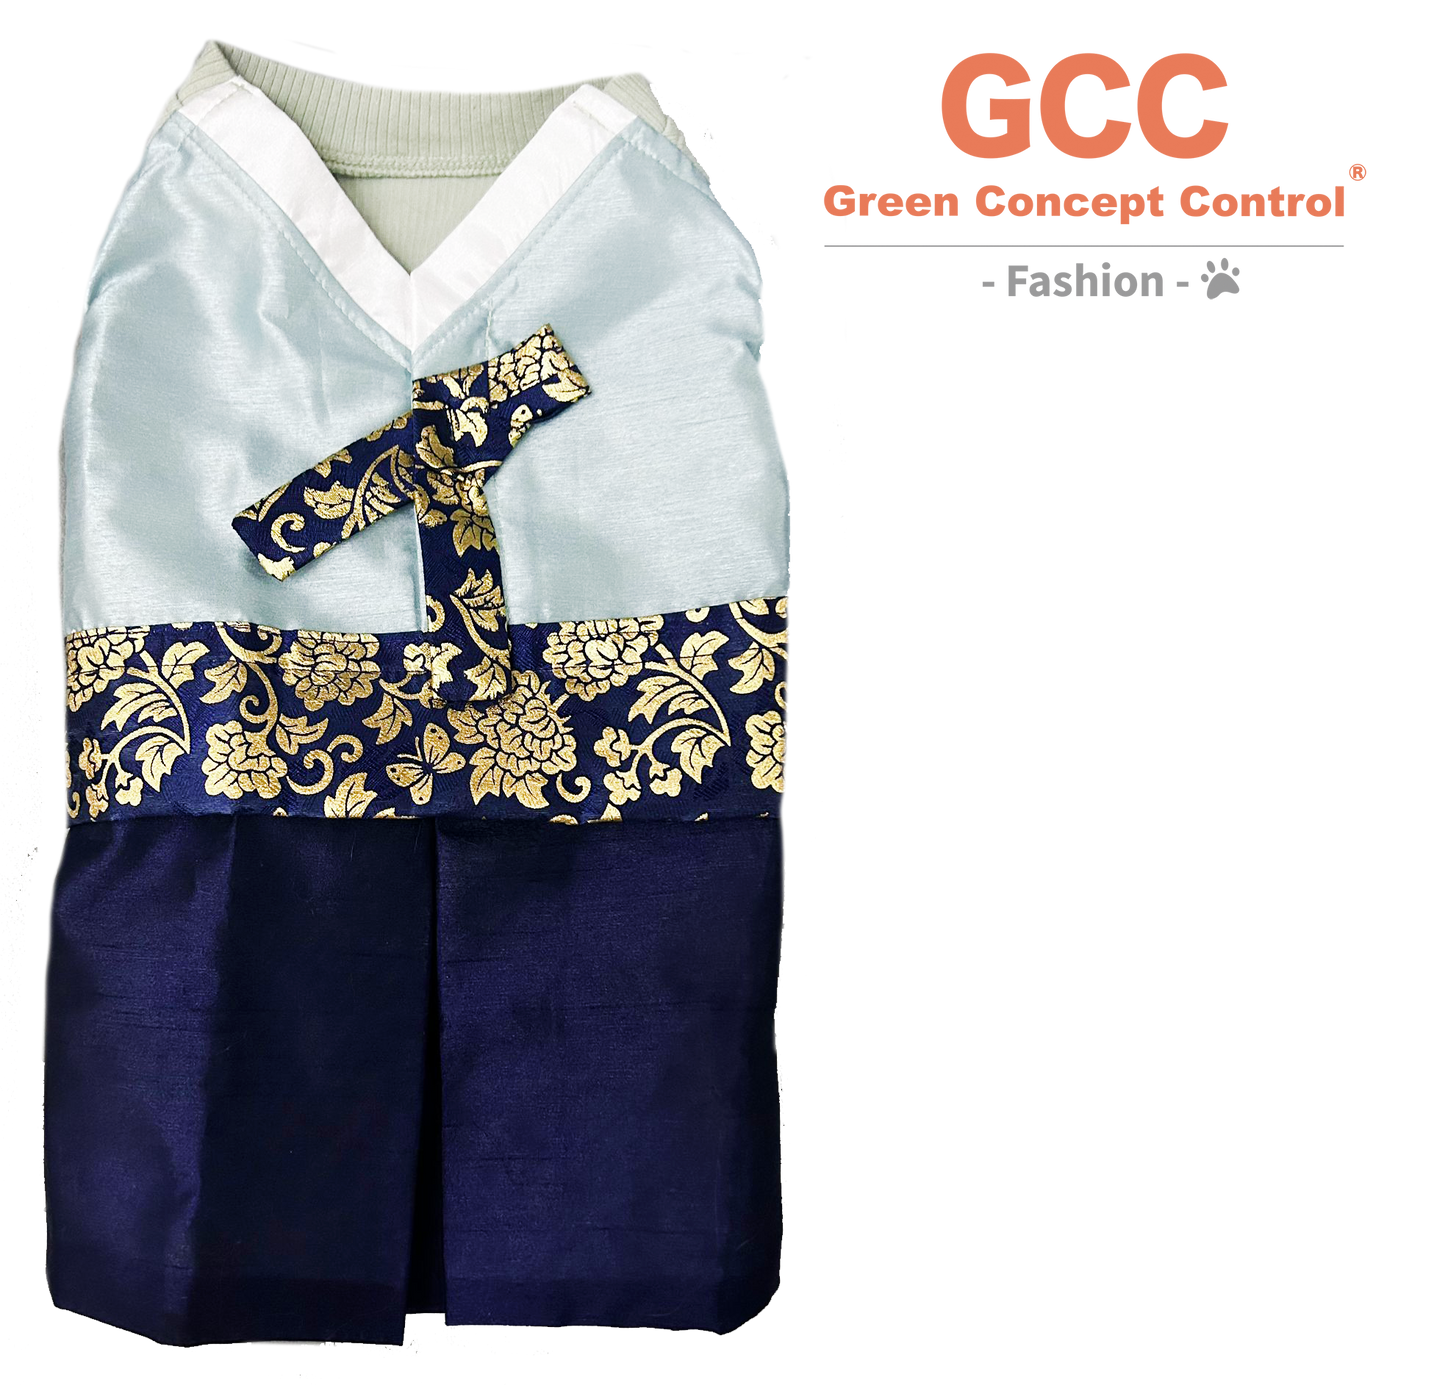 GCC Fashion 傳統韓服寵物衣服